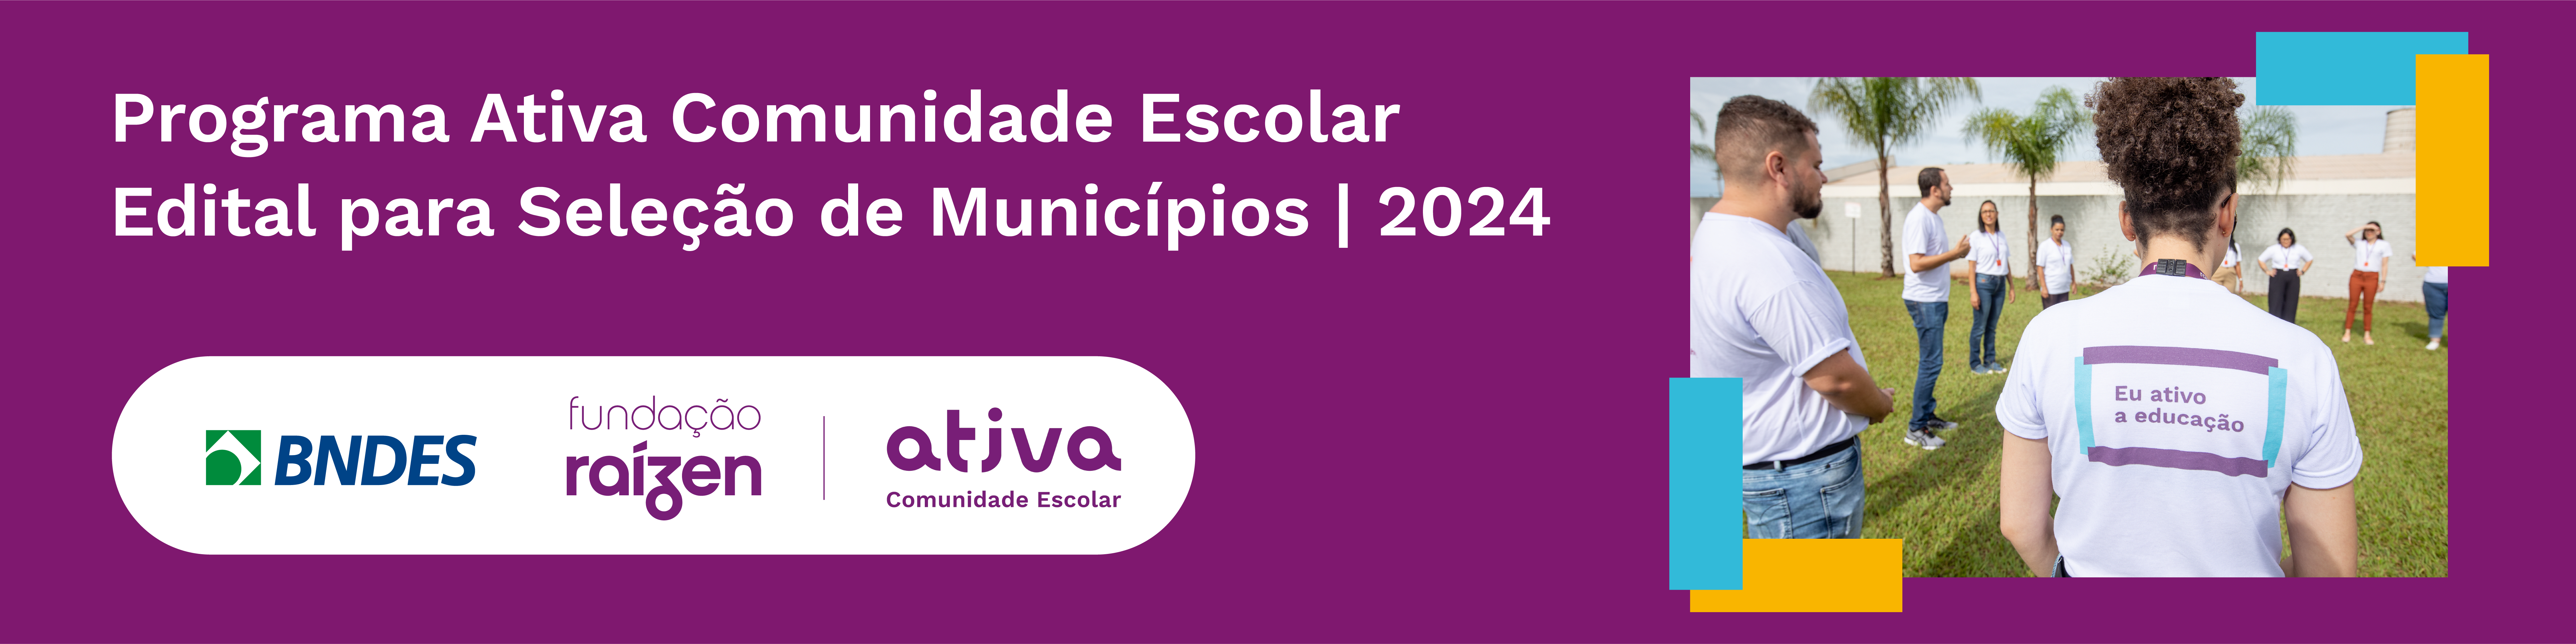 Banner Programa Ativa Comunidade Escolar - Edital para Seleção de Municípios | 2024 (Ciclo II)